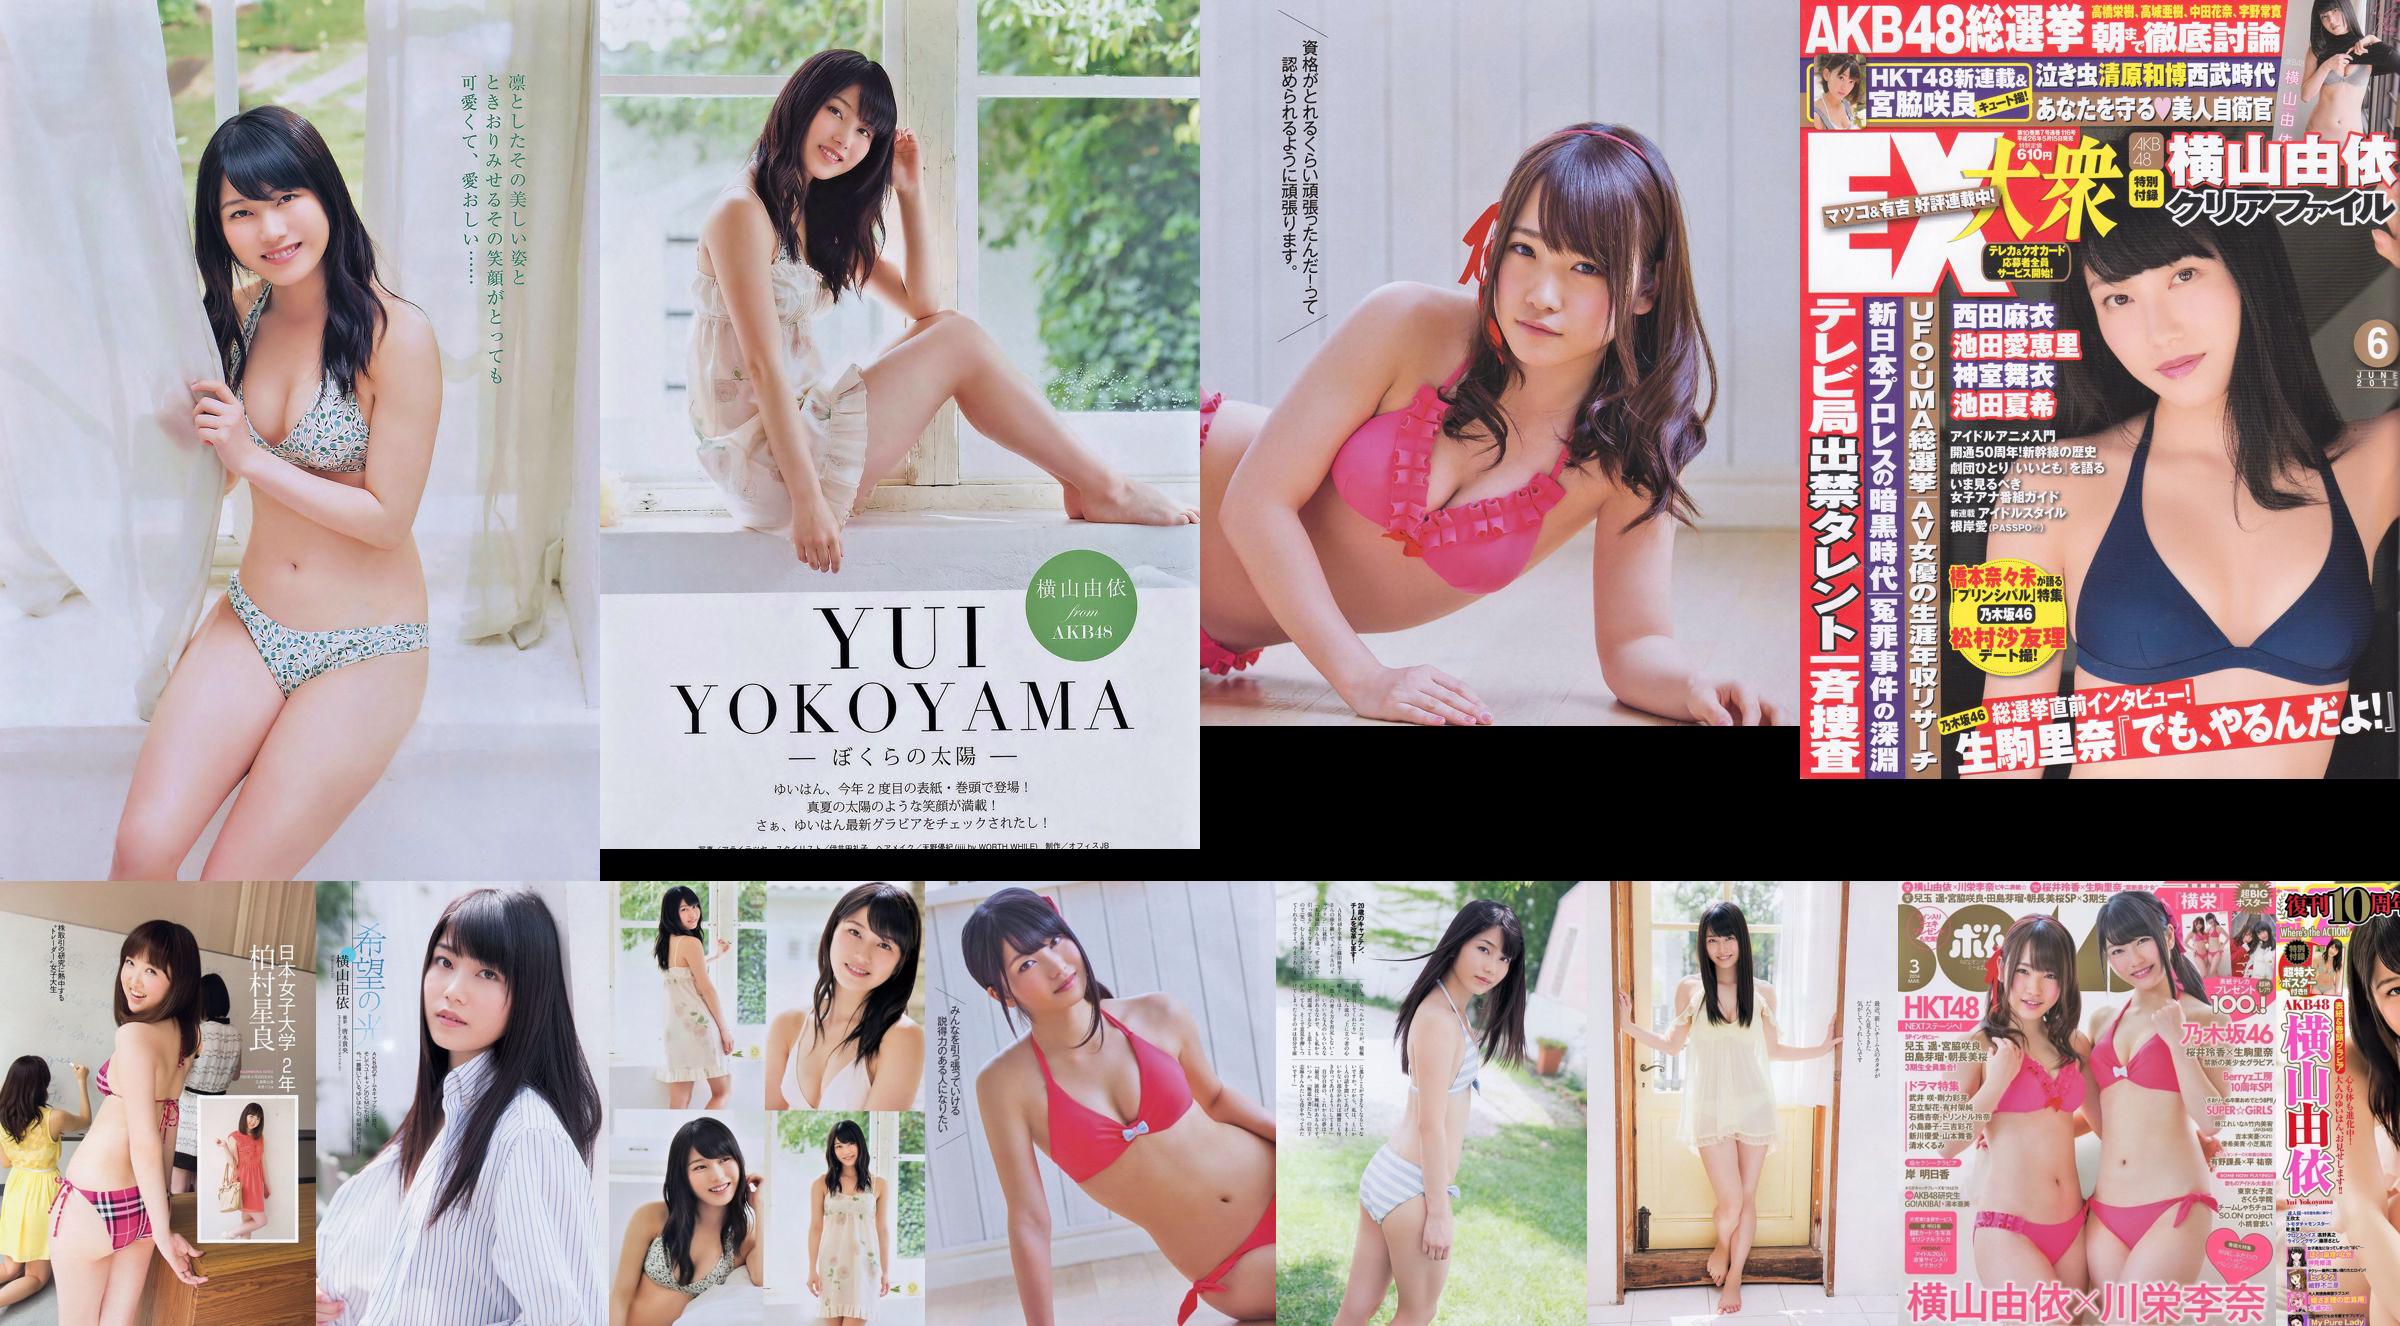 Momoiro Clover Z Yui Yokoyama Yua Shinkawa Mio Uema Anri Sugihara Kumi Yagami [Weekly Playboy] 2013 No.20 Photo Moshi No.76c1d2 Page 5